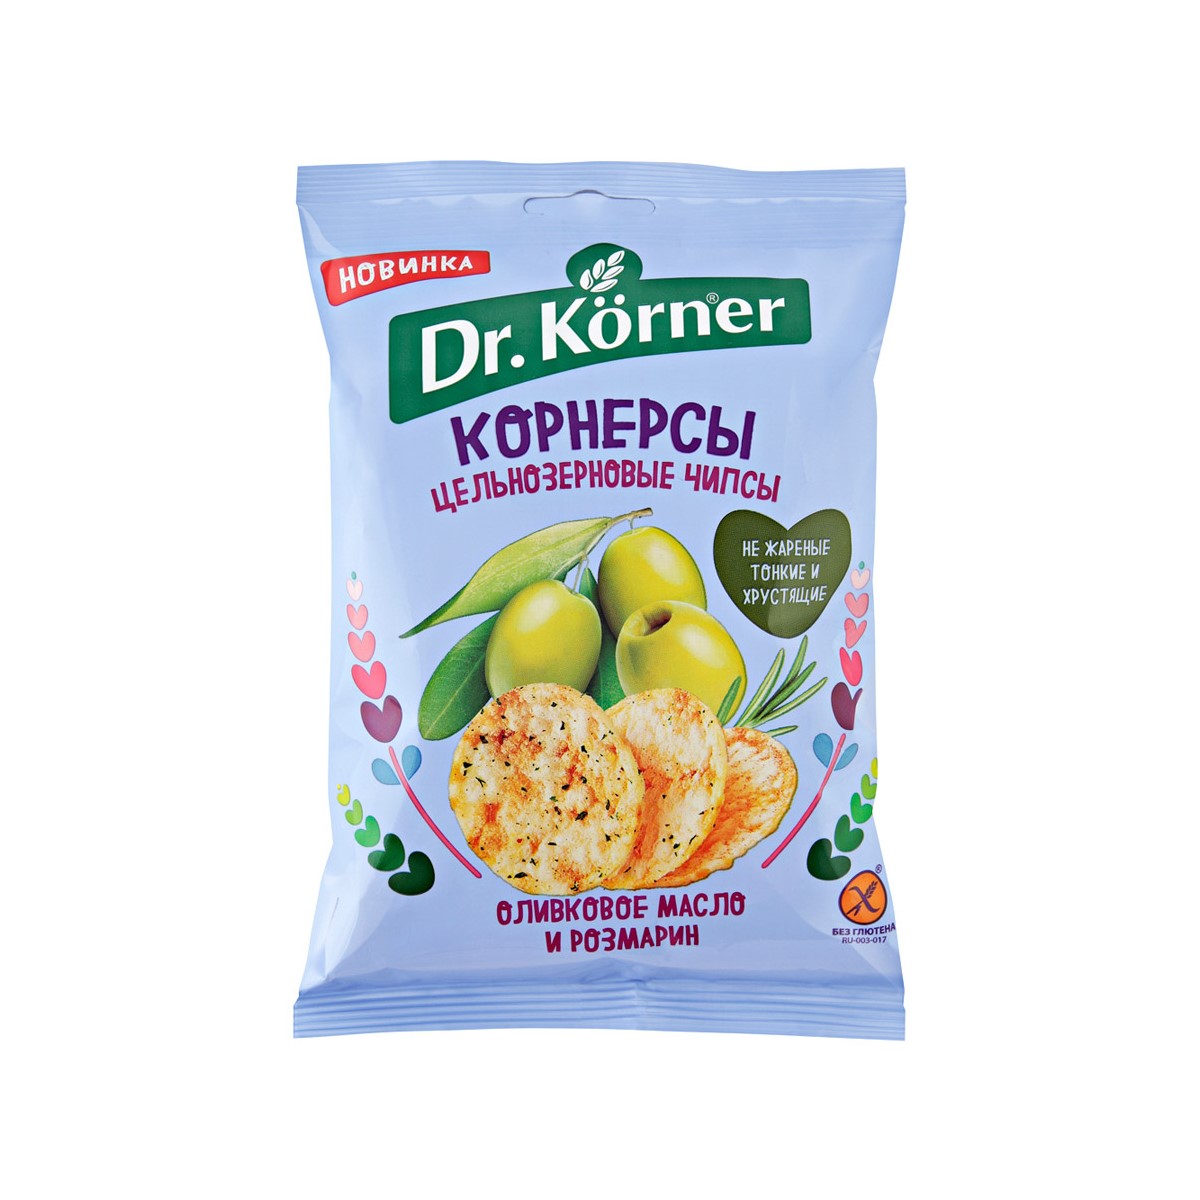 Чипсы Dr. Korner цельнозерновые кукурузно-рисовые с оливковым маслом и розмарином 50 г чипсы кукурузно рисовые dr korner с томатом и базиликом 50 гр